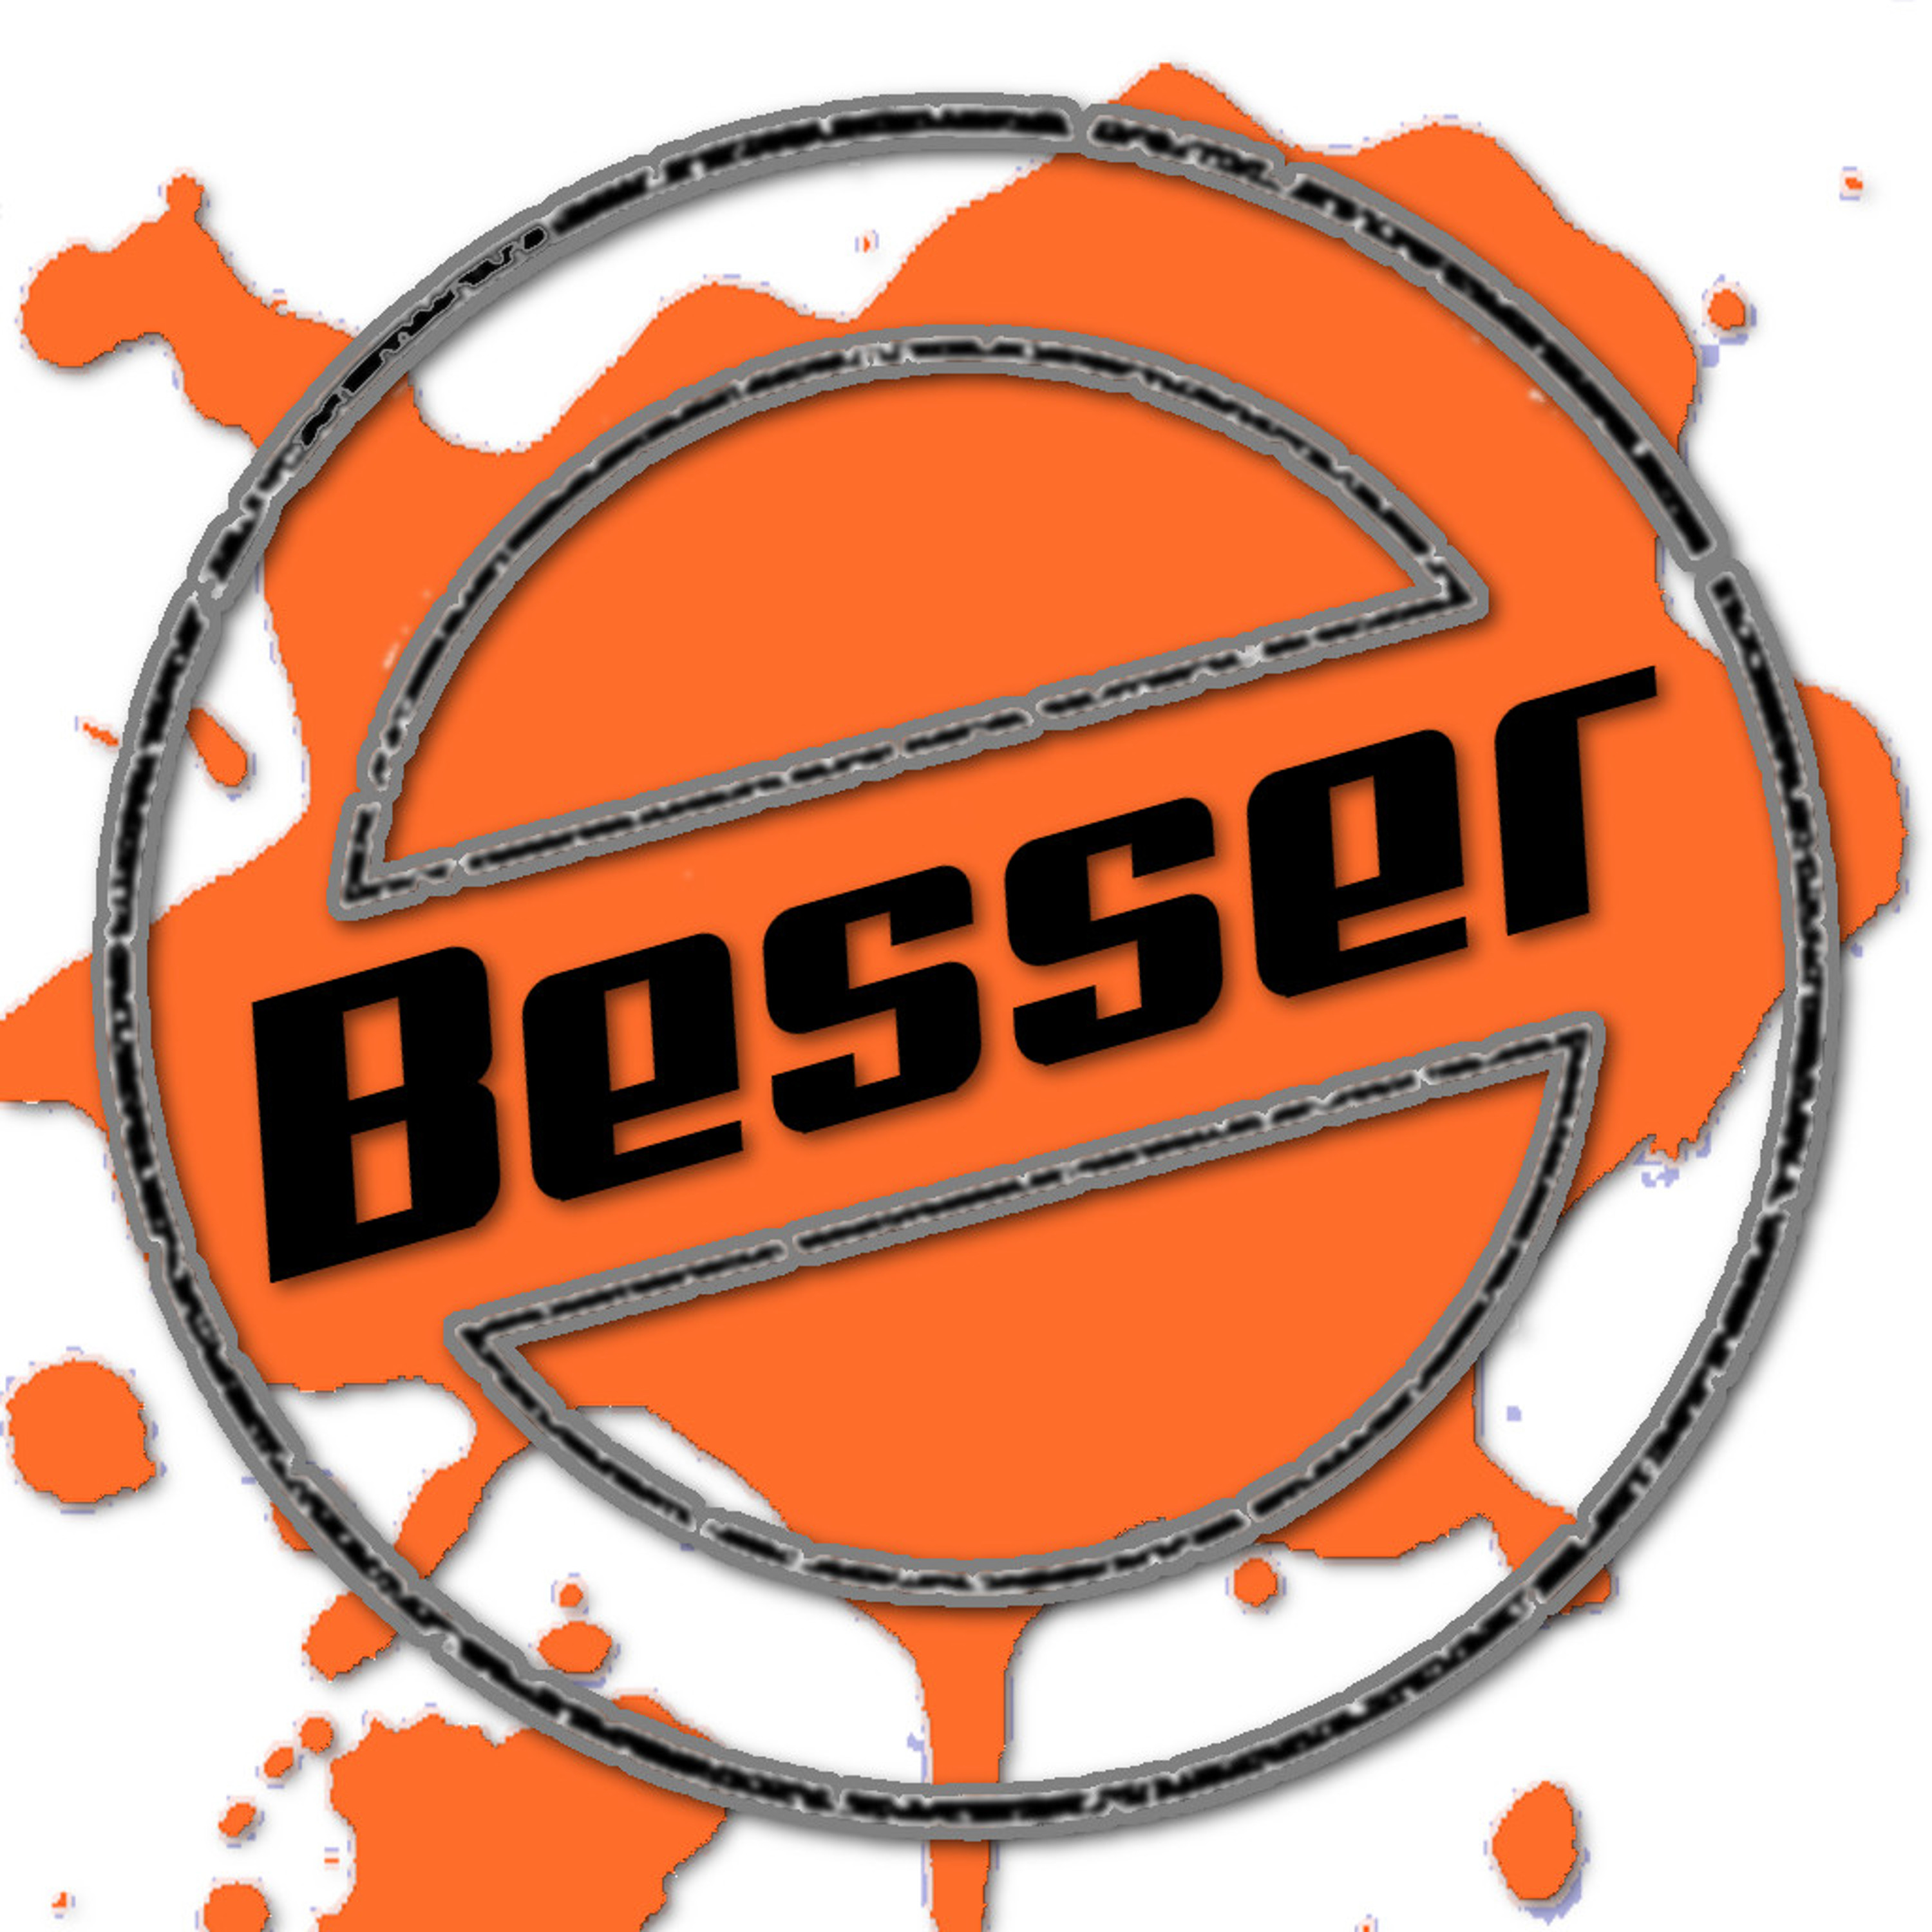 Besser - der Podcast (Besser der Podcast - MP3 Feed - CCBY) artwork